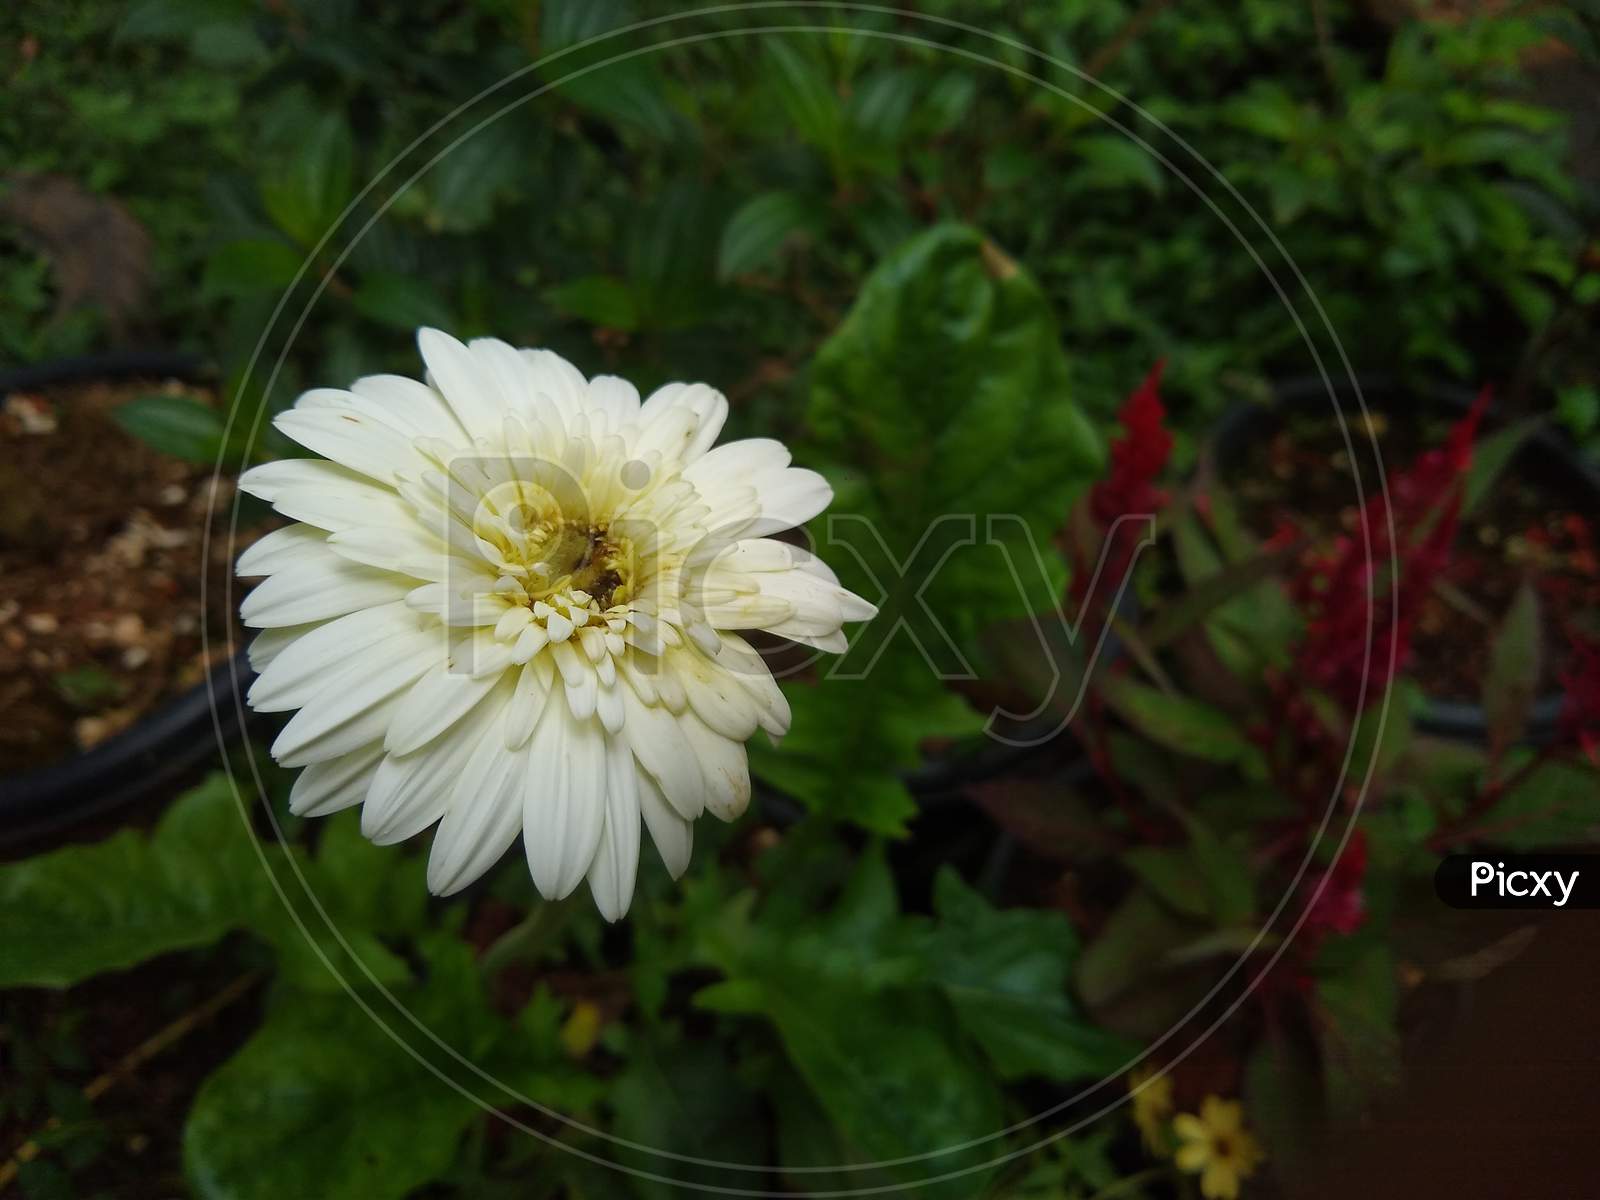 Gerbera Daisy flower in the garden